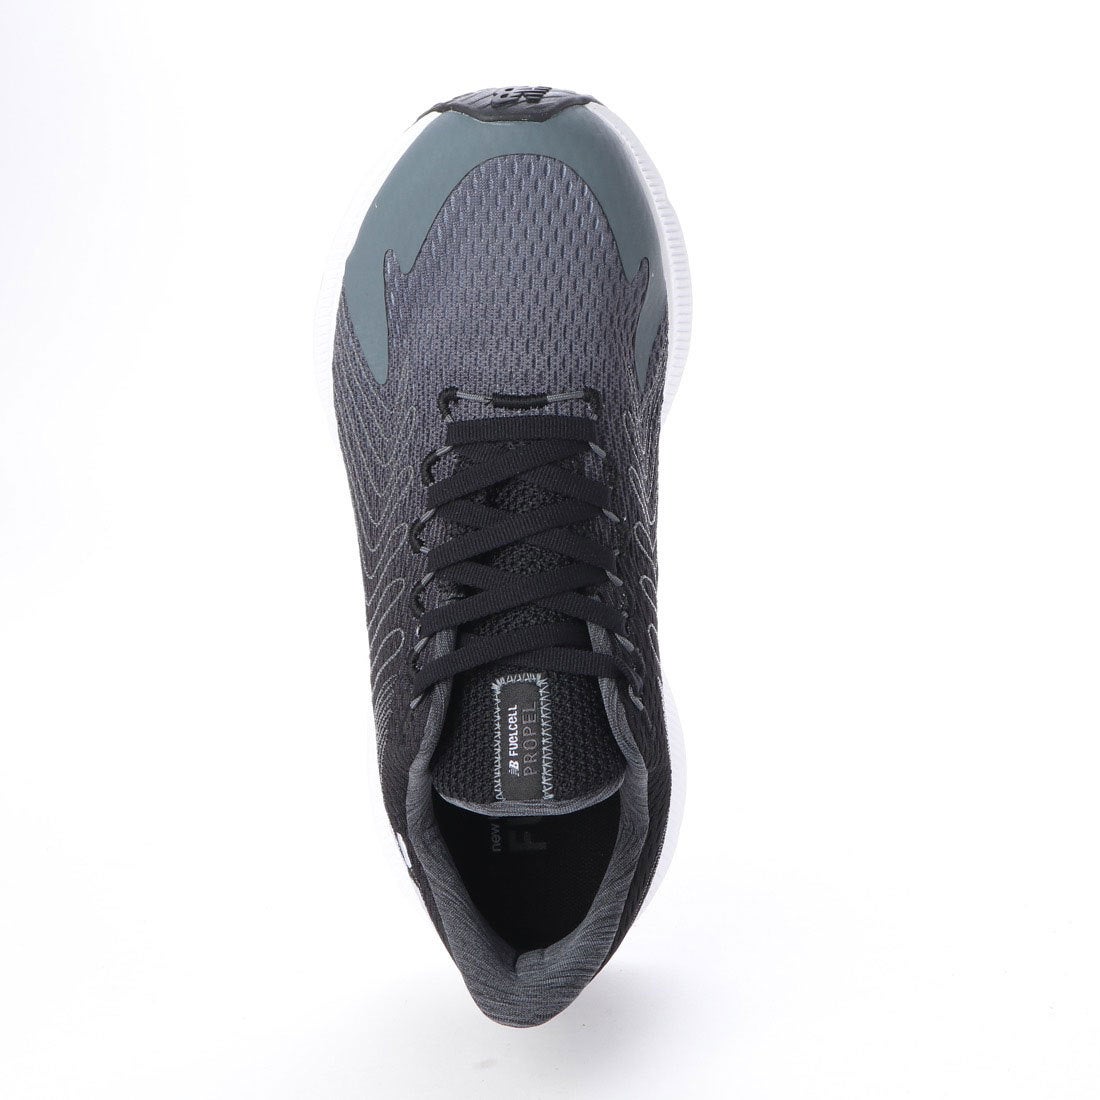 ニューバランス new balance ランニングシューズ 赤 黒 FuelCell PROPEL BG2 MFCPRRB2D ジョギングシューズ  マラソン メンズ 靴 シューズ 超高品質で人気の